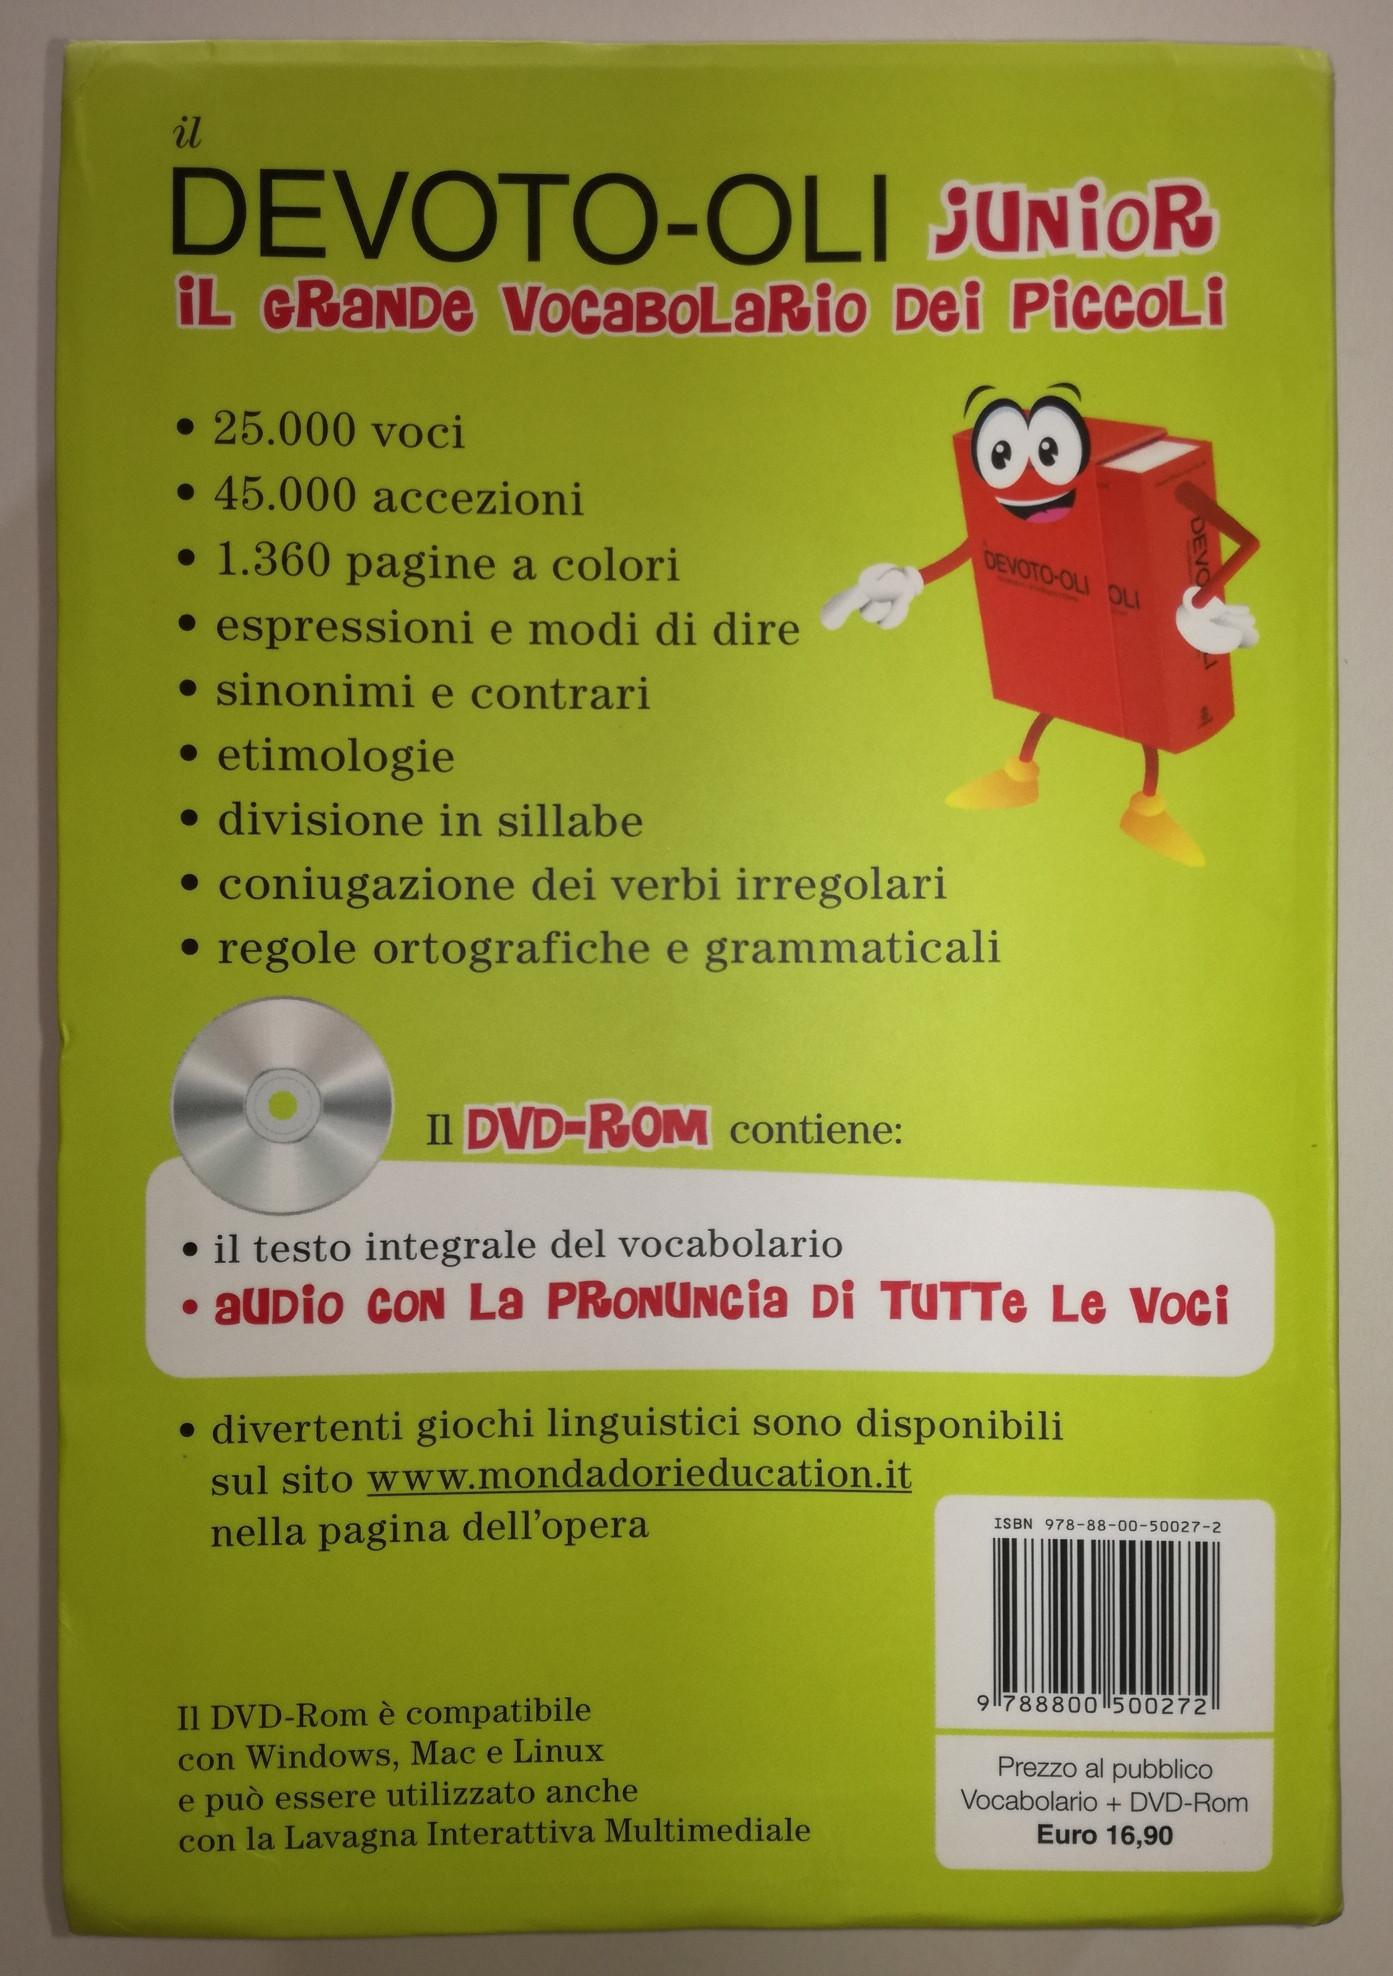 VOCABOLARIO ITALIANO JUNIOR DEVOTO-OLI in 10153 Torino for €10.00